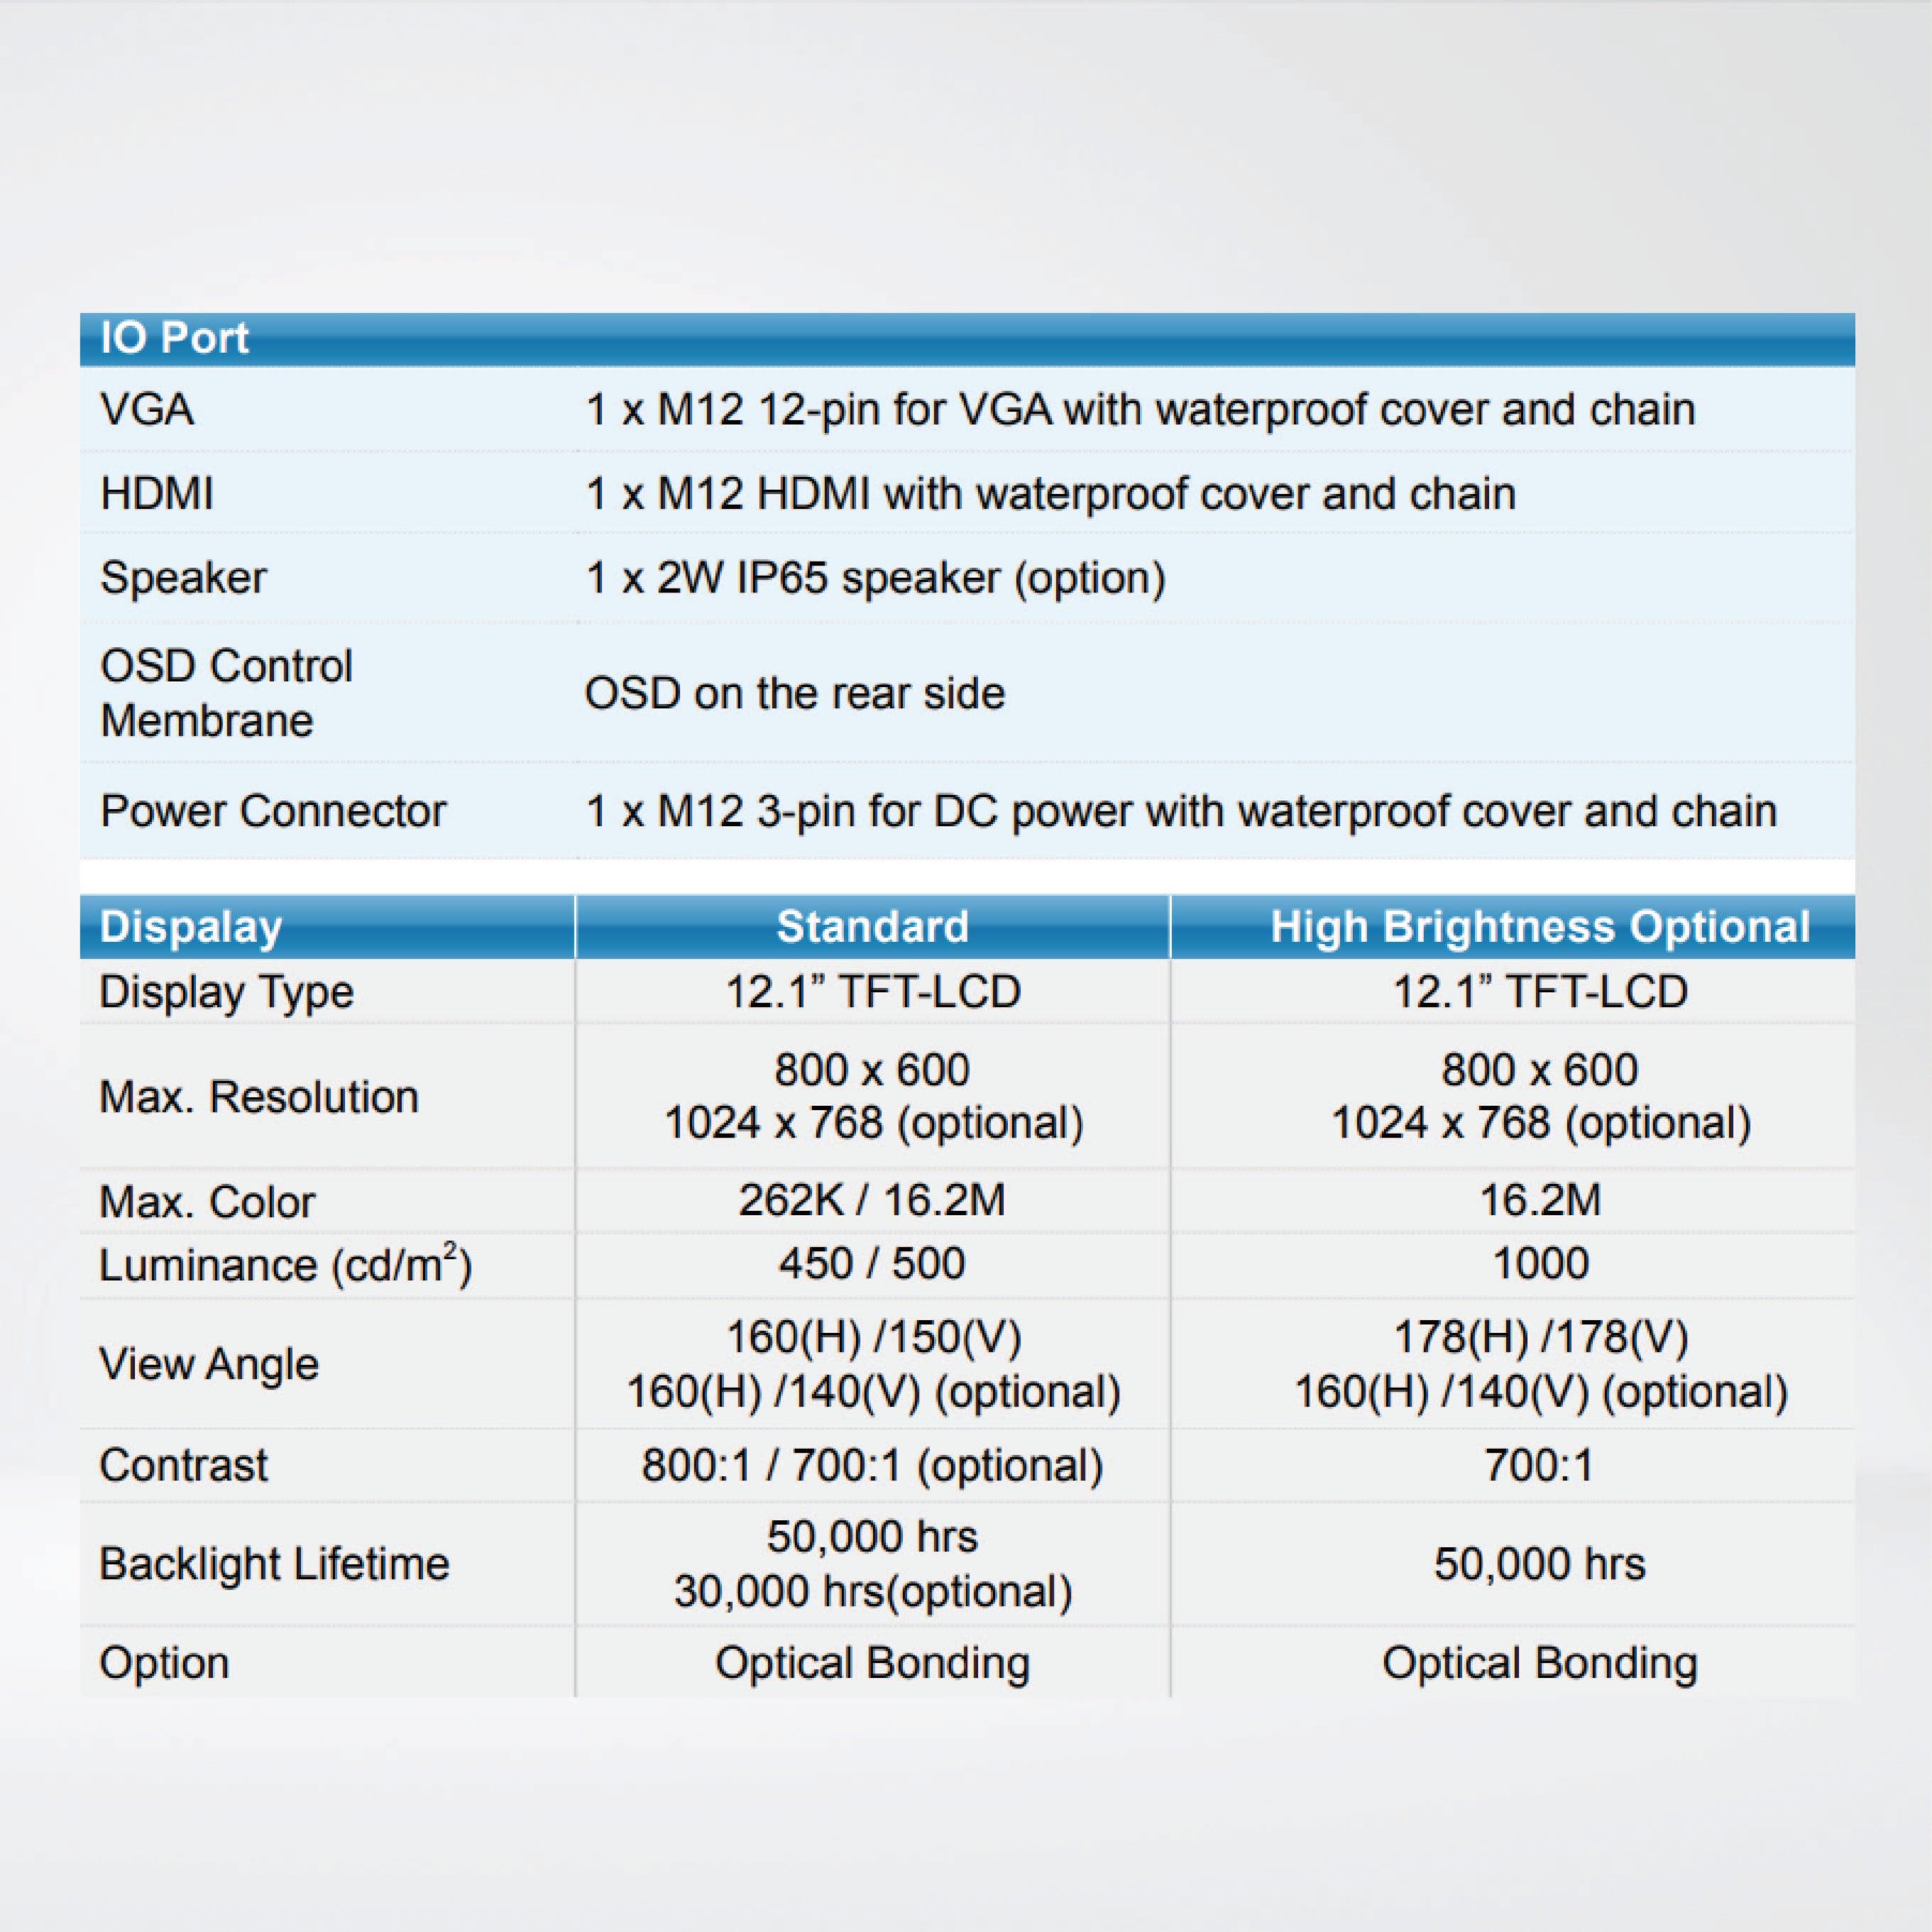 ViTAM-112P 12.1″ New Gen. IP66/IP69K Stainless Steel Display - Riverplus